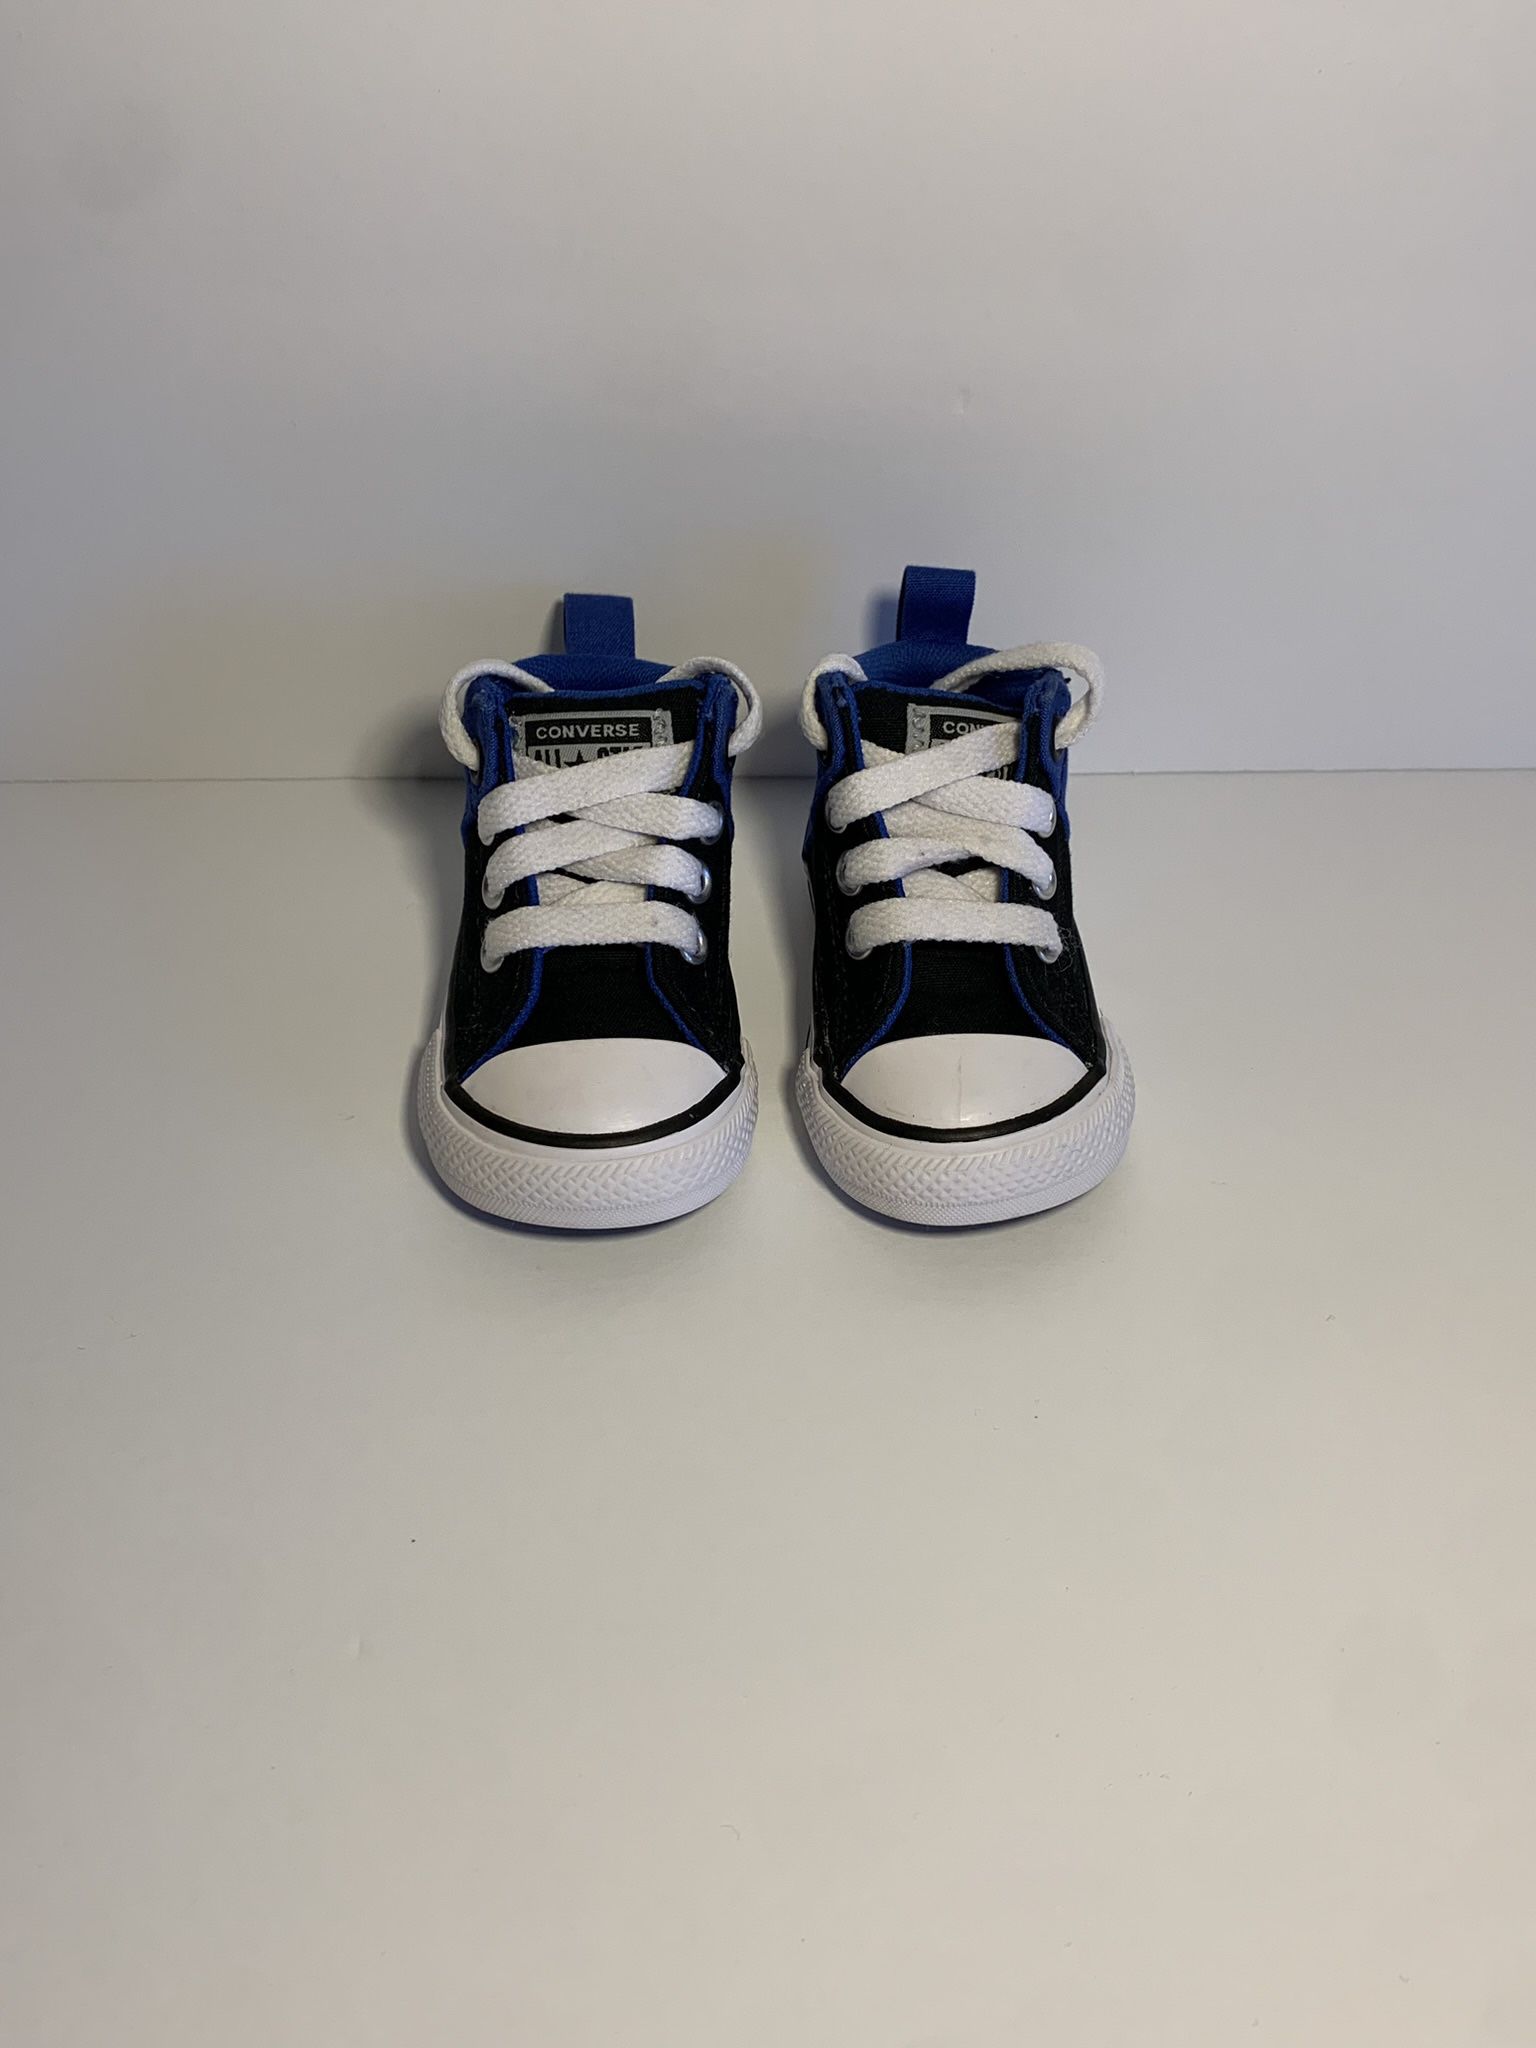 Converse Boys Toddler Shoes